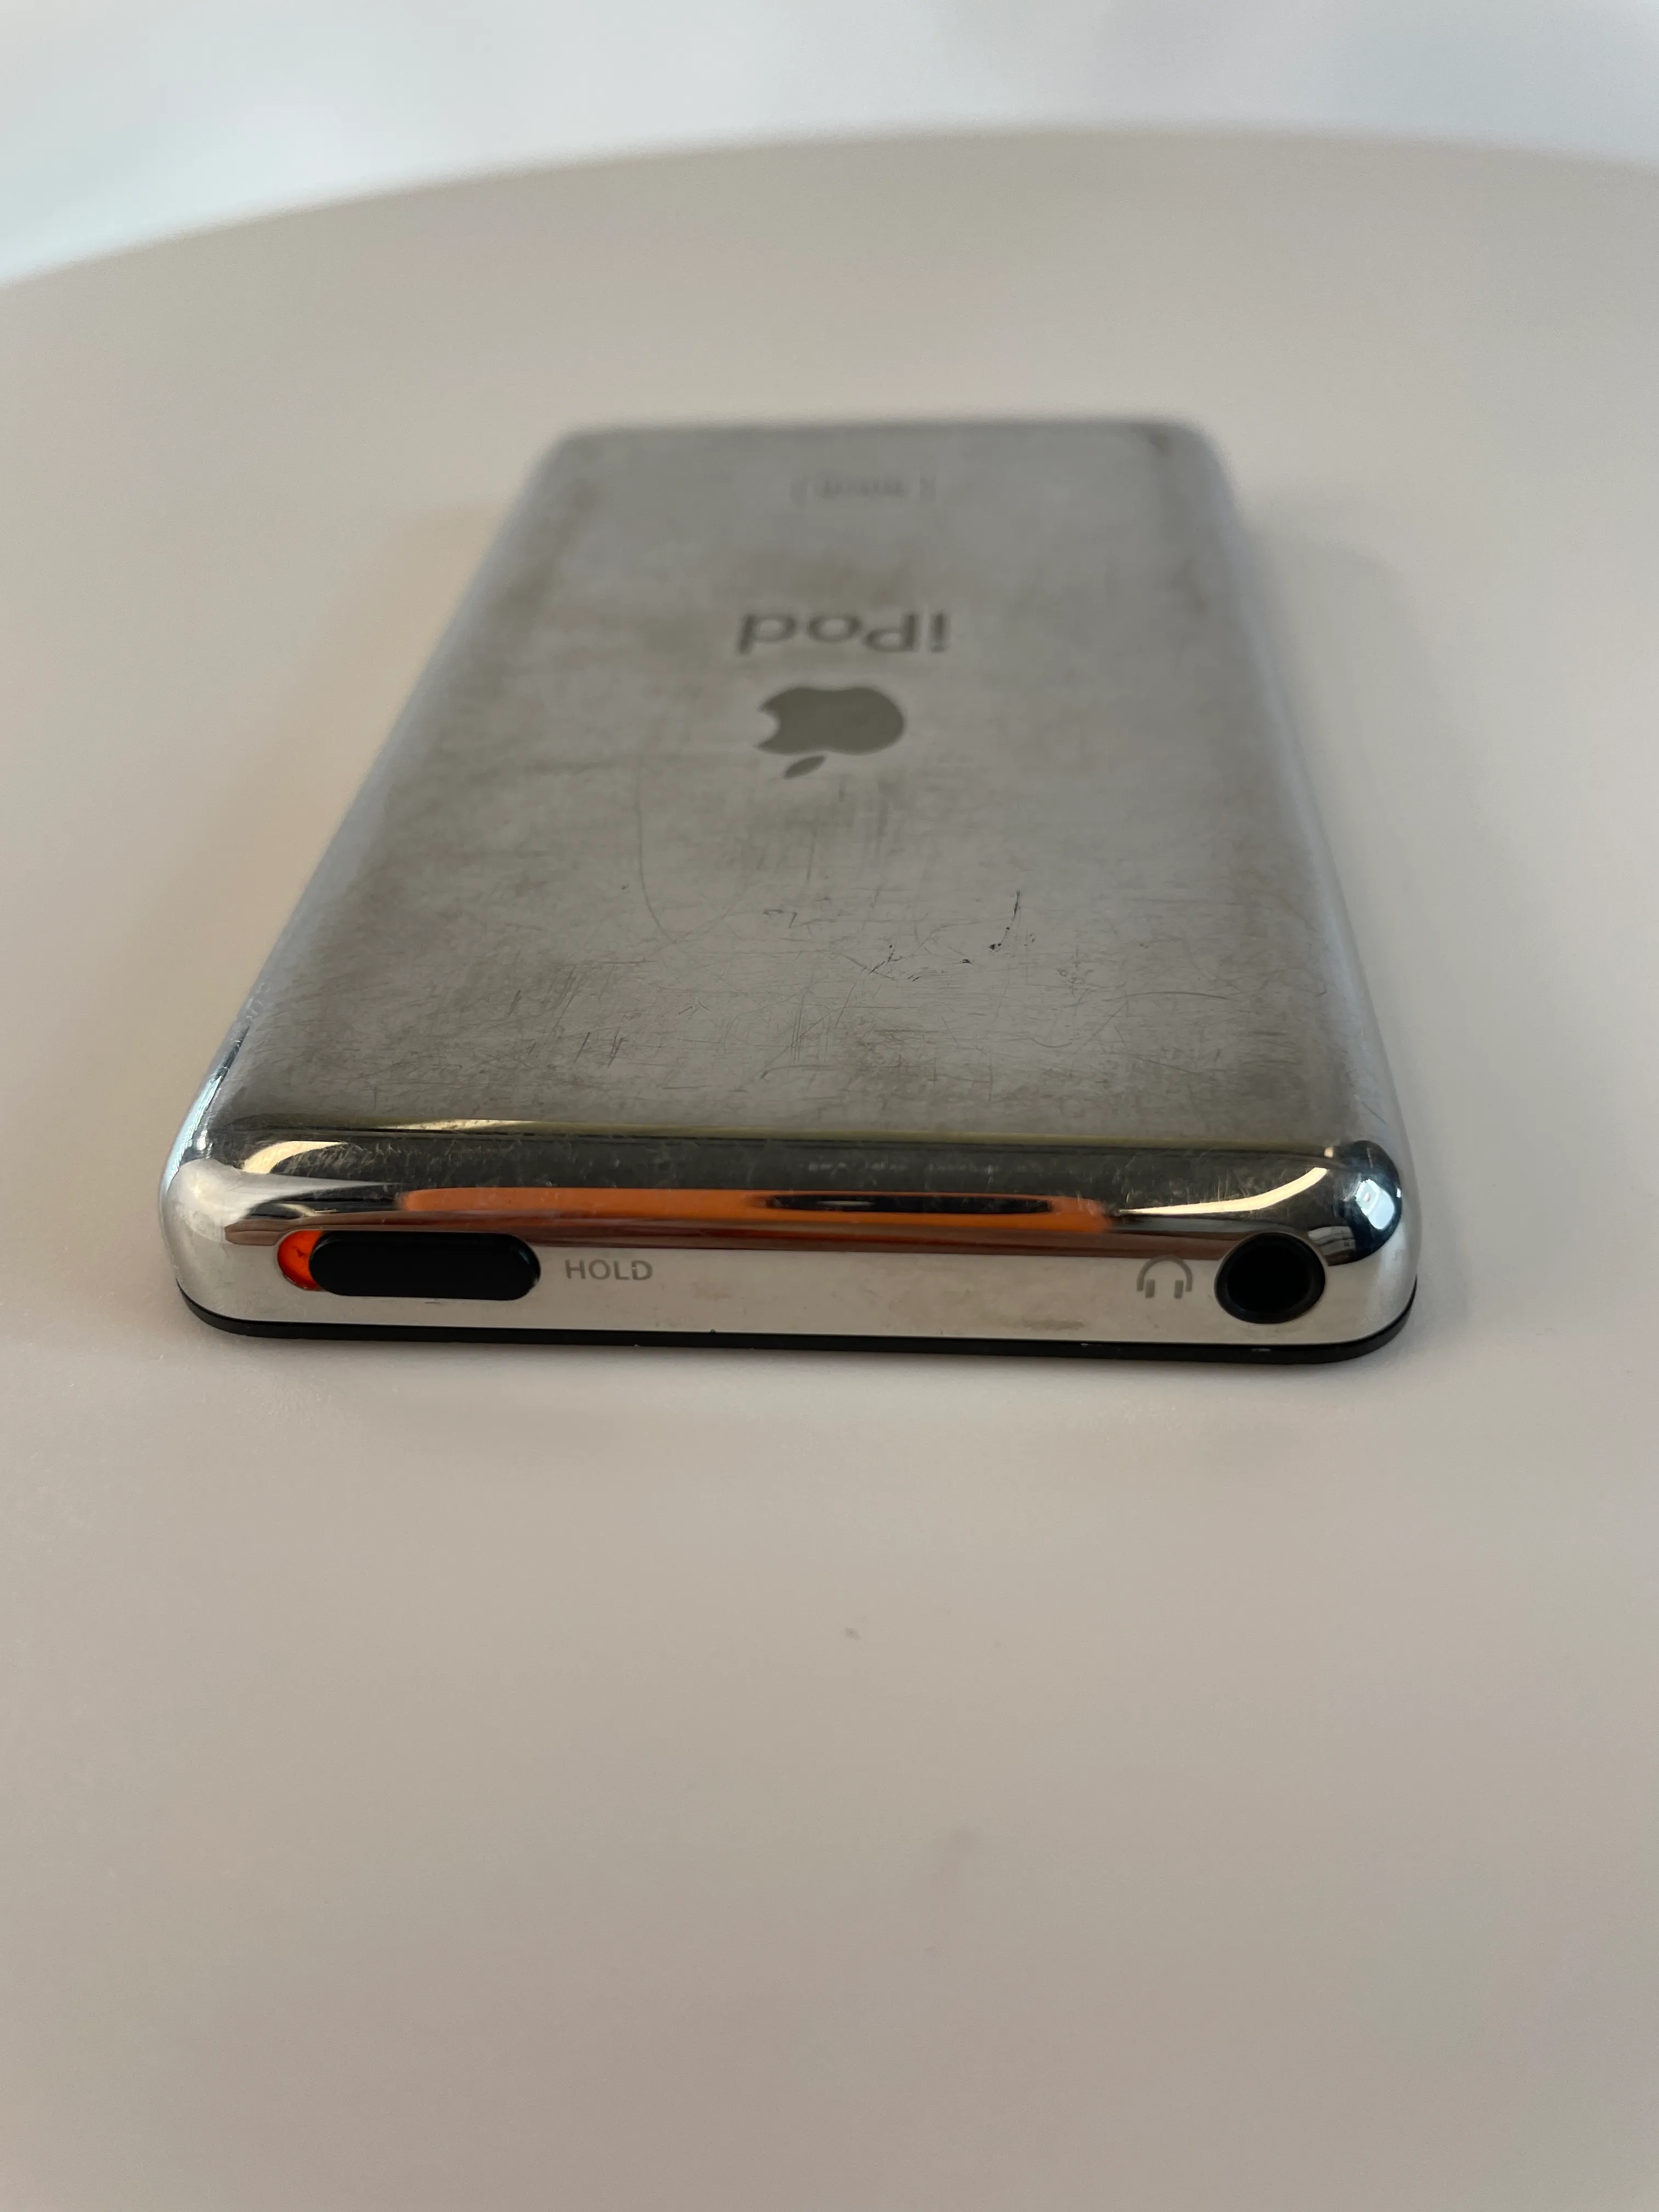 Apple iPod Classic 6th Generation A1238 (Black - 80 GB) media